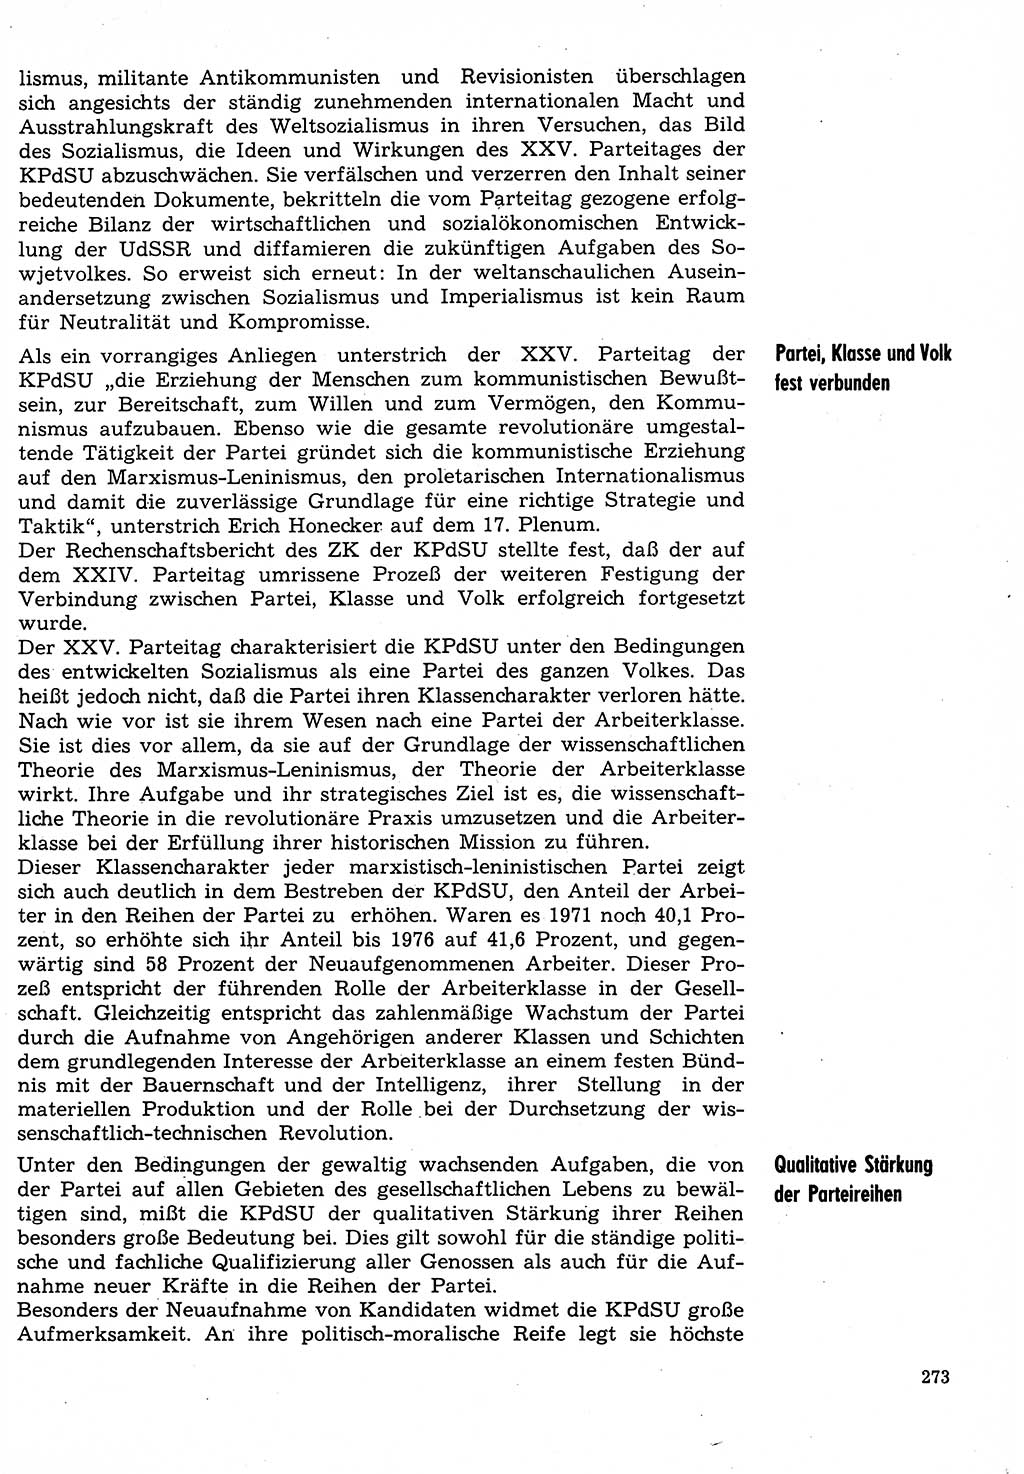 Neuer Weg (NW), Organ des Zentralkomitees (ZK) der SED (Sozialistische Einheitspartei Deutschlands) für Fragen des Parteilebens, 31. Jahrgang [Deutsche Demokratische Republik (DDR)] 1976, Seite 273 (NW ZK SED DDR 1976, S. 273)